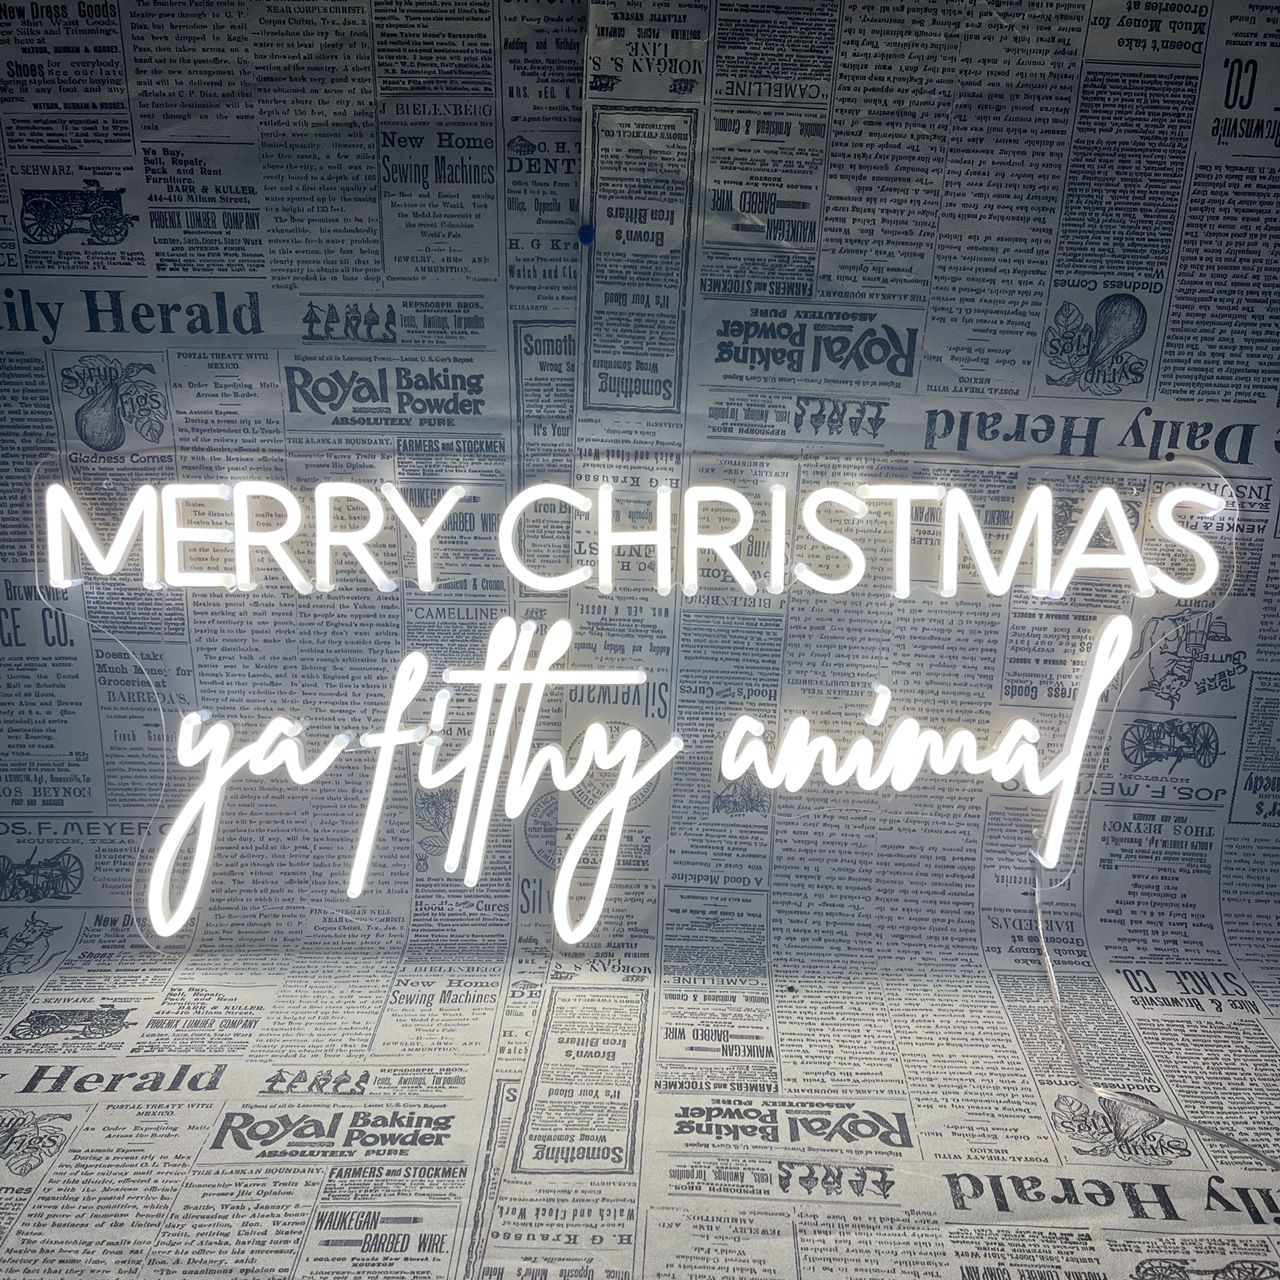 Merry Christmas - Ya Filthy Animal